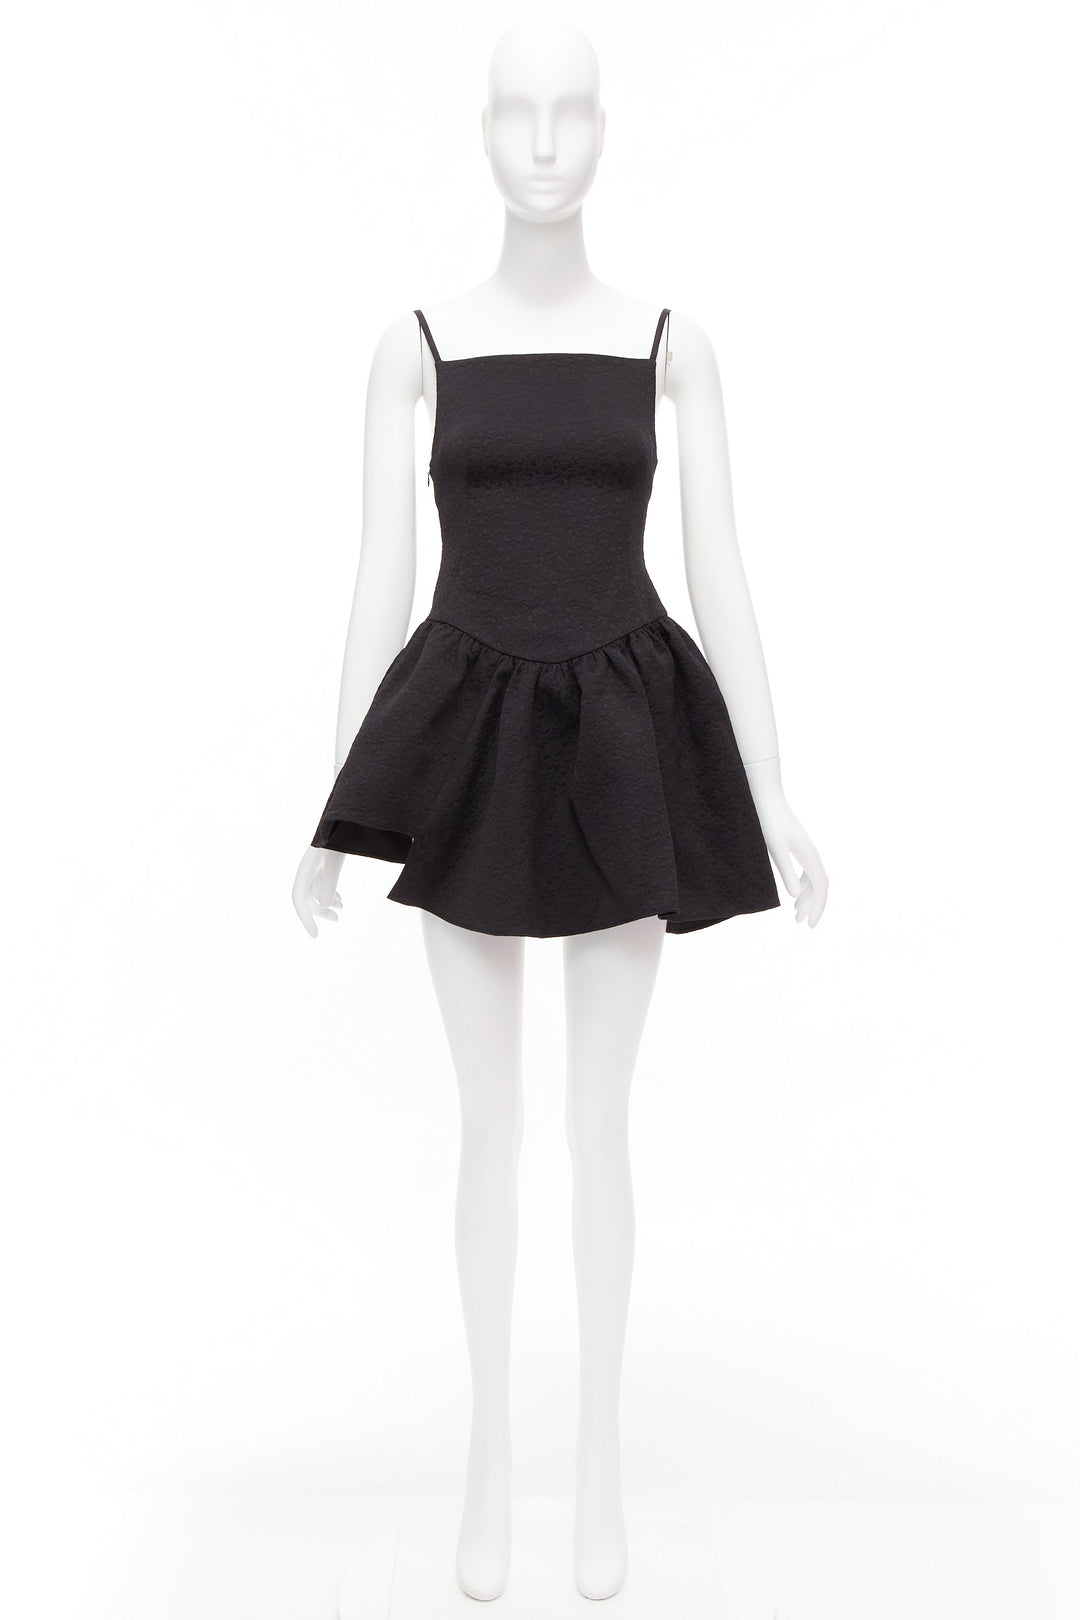 SHUSHU TONG black floral cloque spaghetti strap flounce skirt mini dress UK6 XS